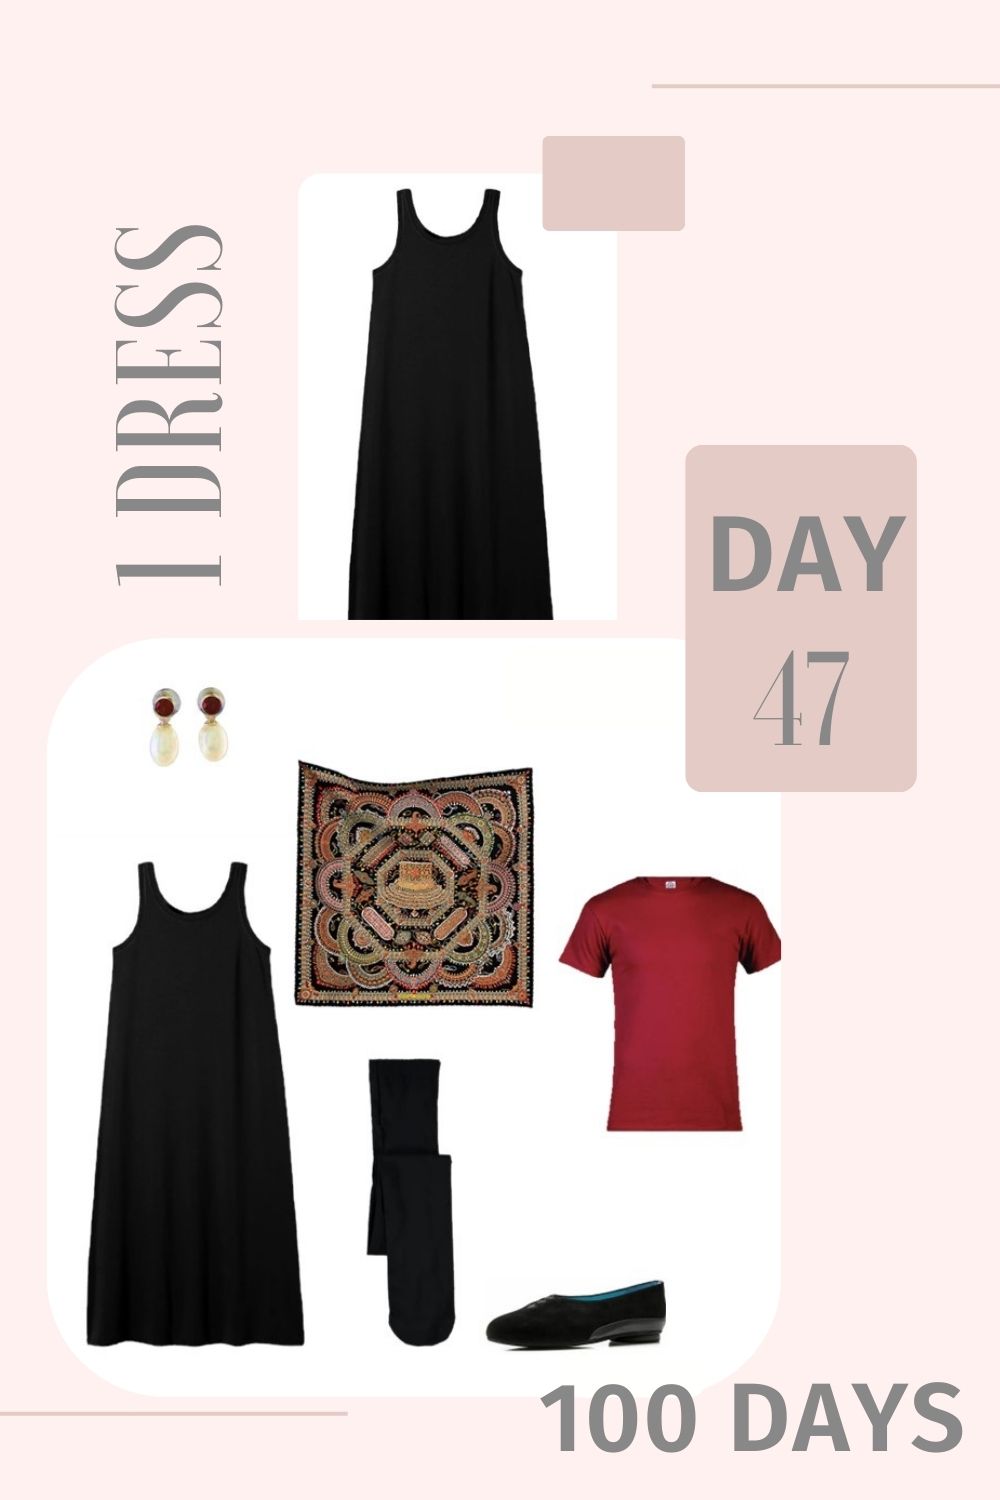 1 Dress 100 Days - Day 47